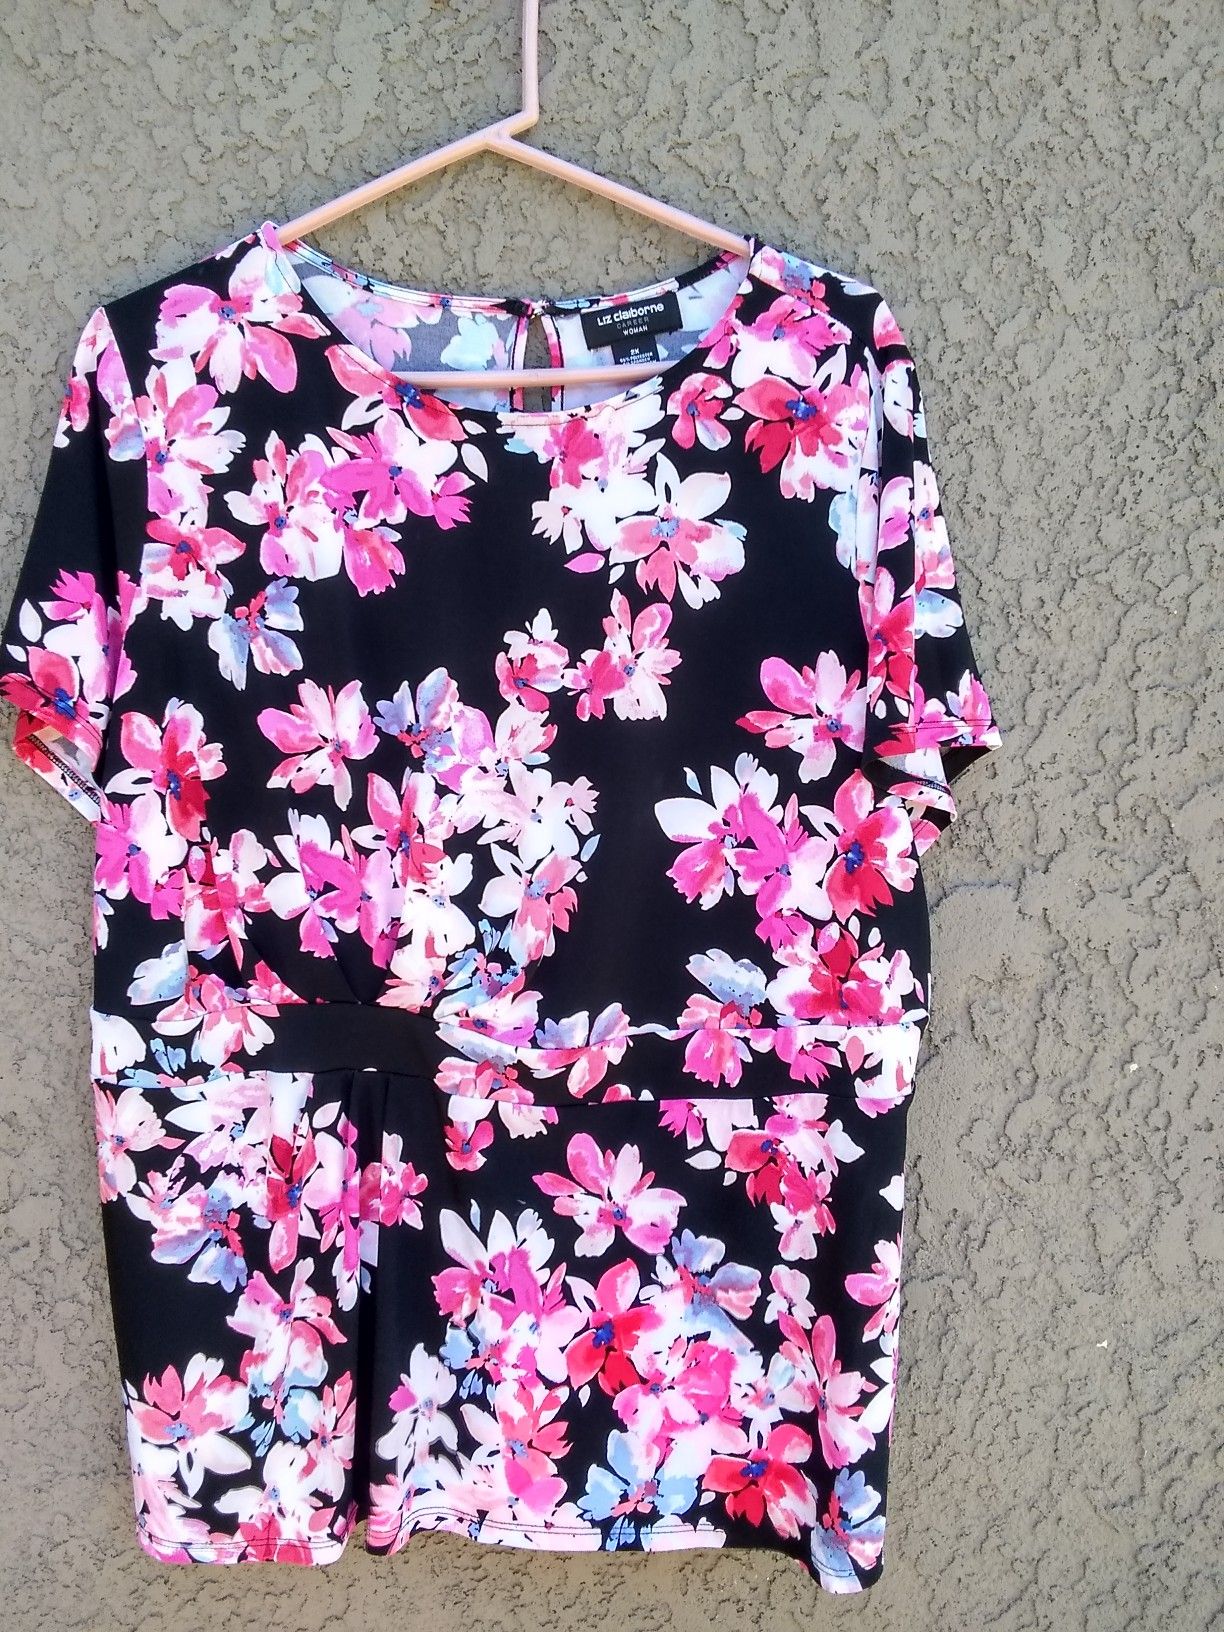 Flowered Shirt